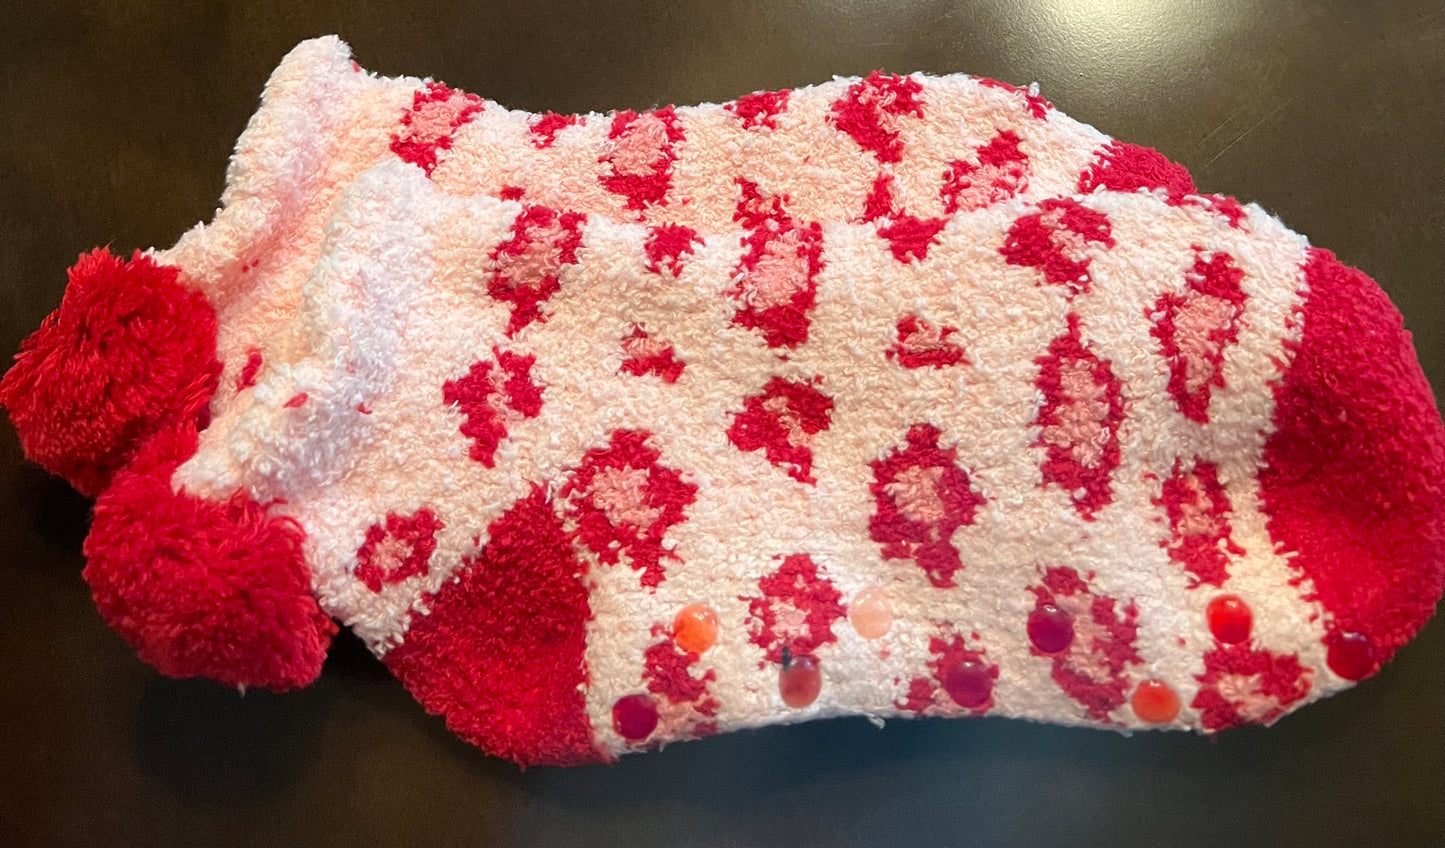 Pink & Red Animal Print Comfy Socks